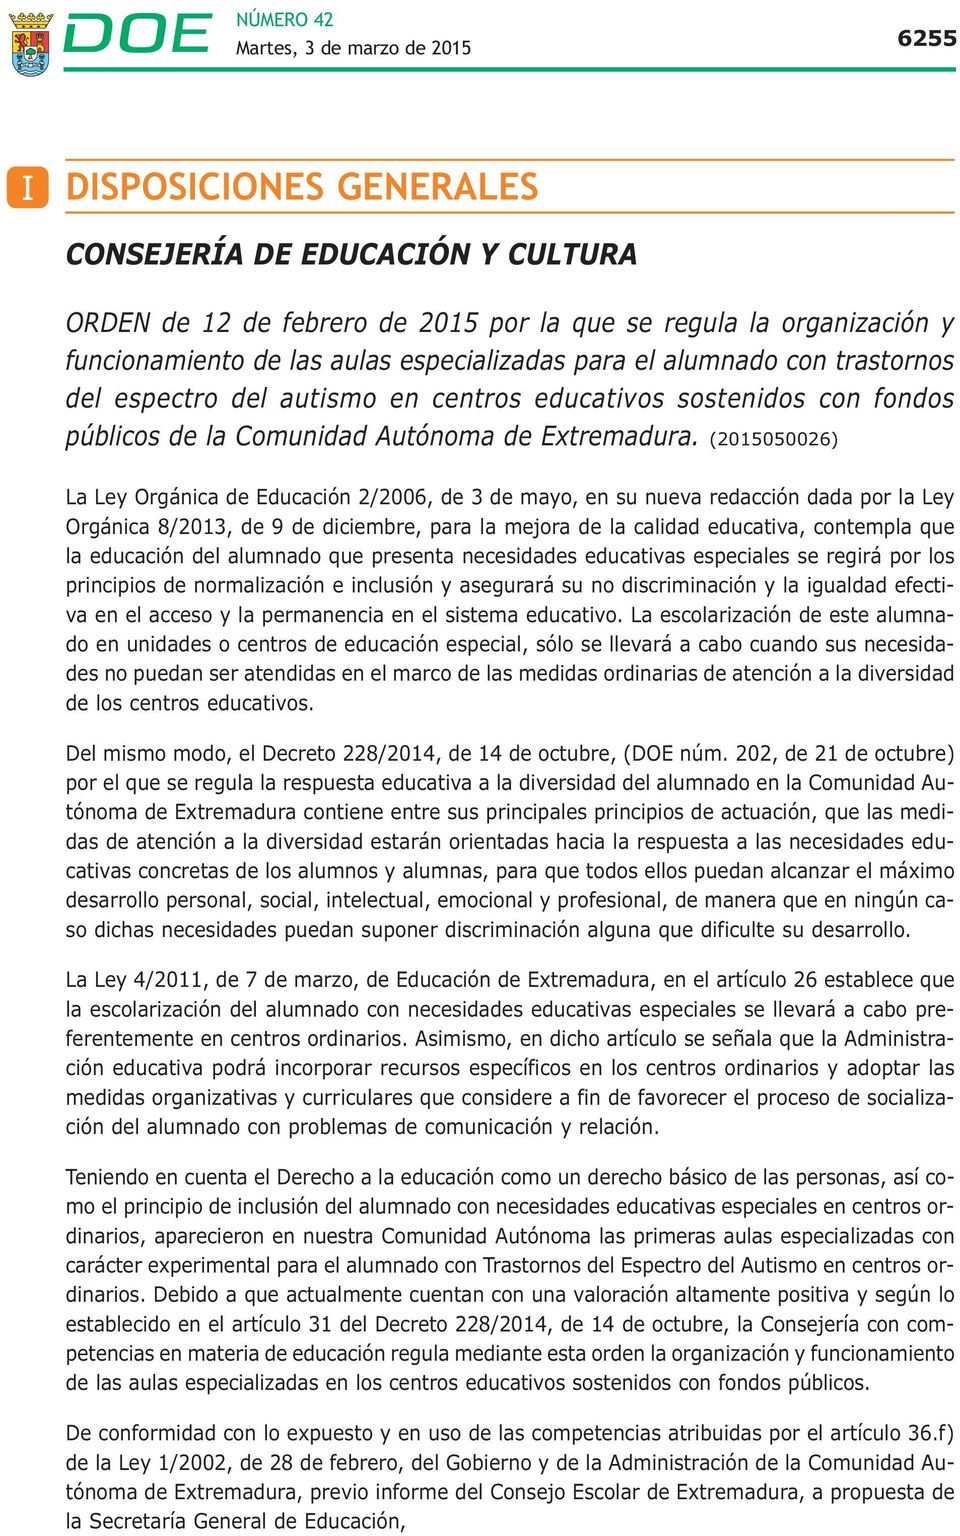 (2015050026) La Ley Orgánica de Educación 2/2006, de 3 de mayo, en su nueva redacción dada por la Ley Orgánica 8/2013, de 9 de diciembre, para la mejora de la calidad educativa, contempla que la